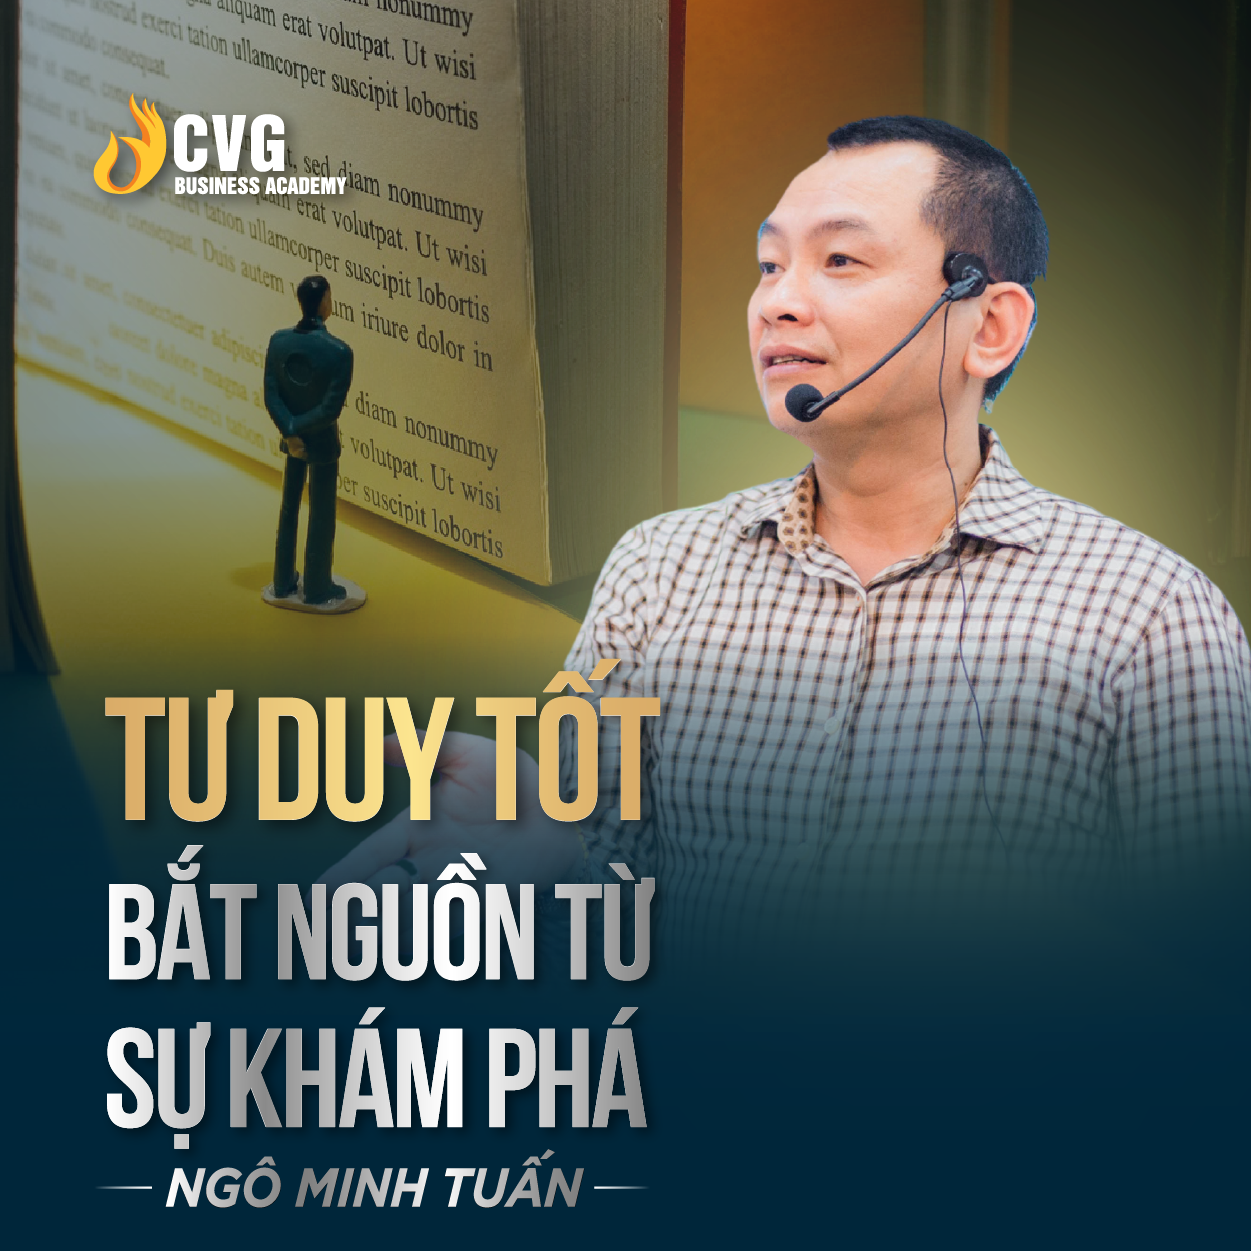 TƯ DUY TỐT BẮT NGUỒN TỪ SỰ KHÁM PHÁ | Ngô Minh Tuấn | Học Viện CEO Việt Nam Global